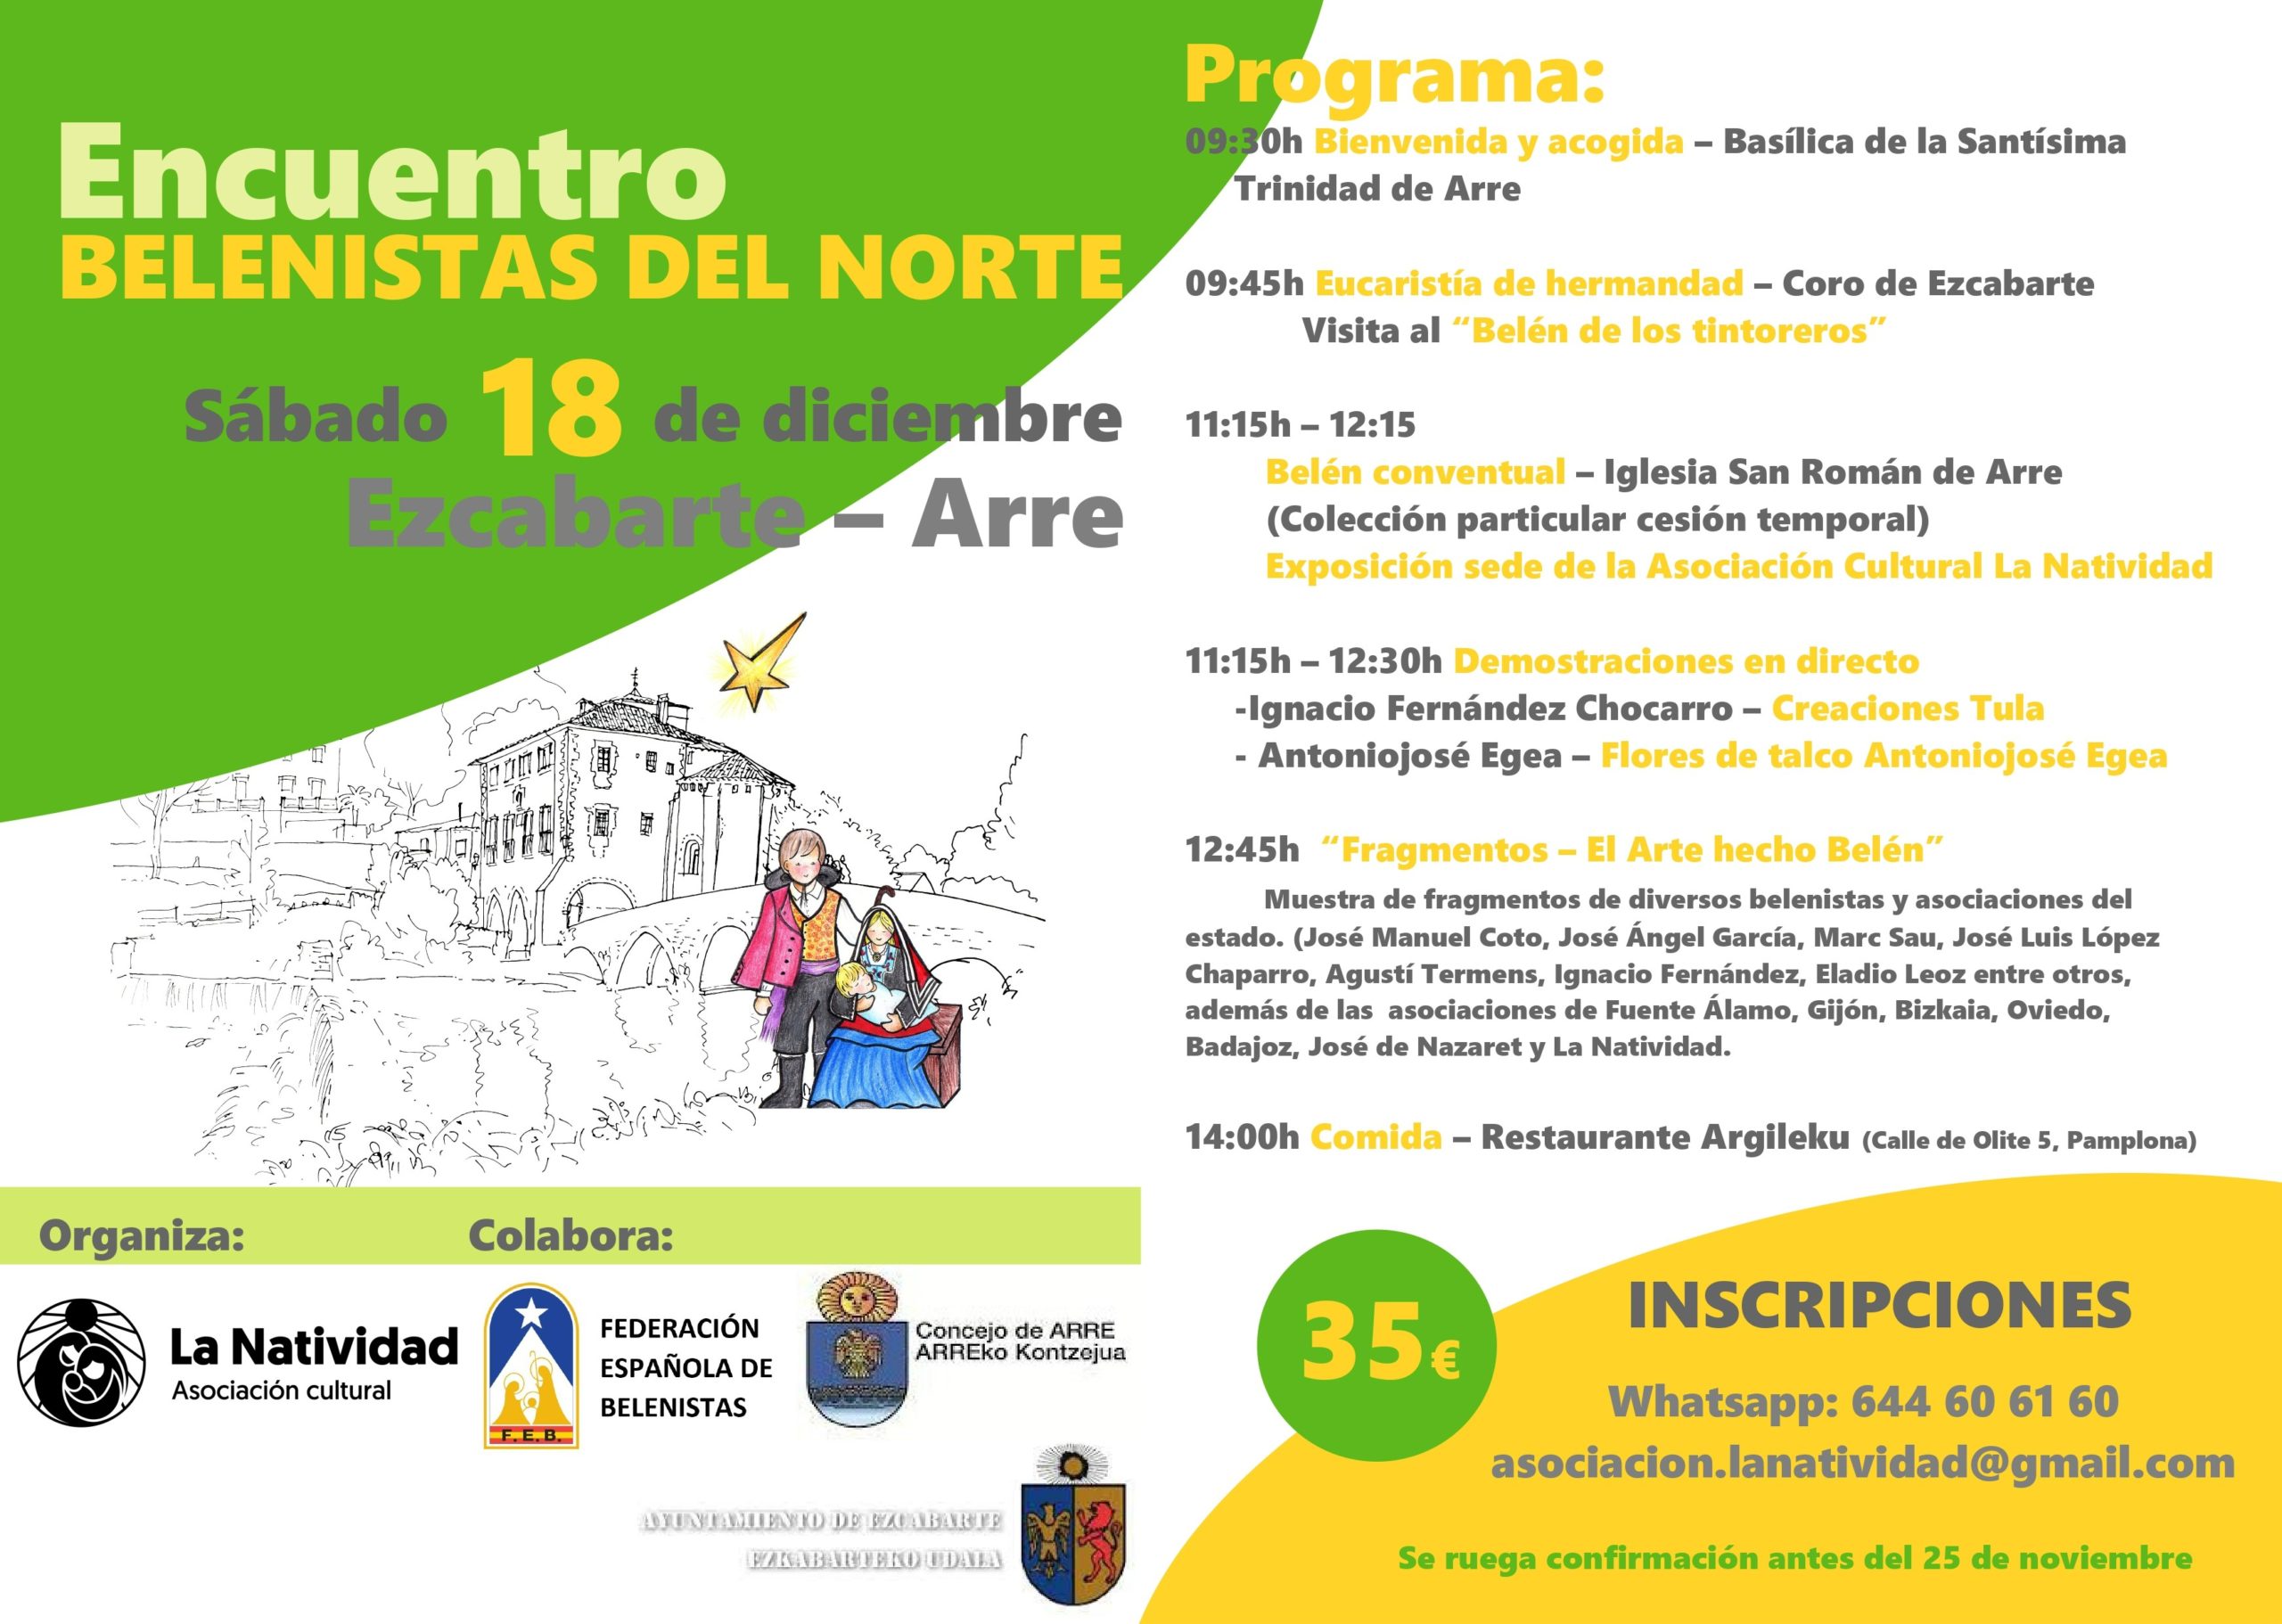 Programa del Encuentro de Belenistas del Norte 2021, organizado por la Asociación Cultural La Natividad de Ezcabarte